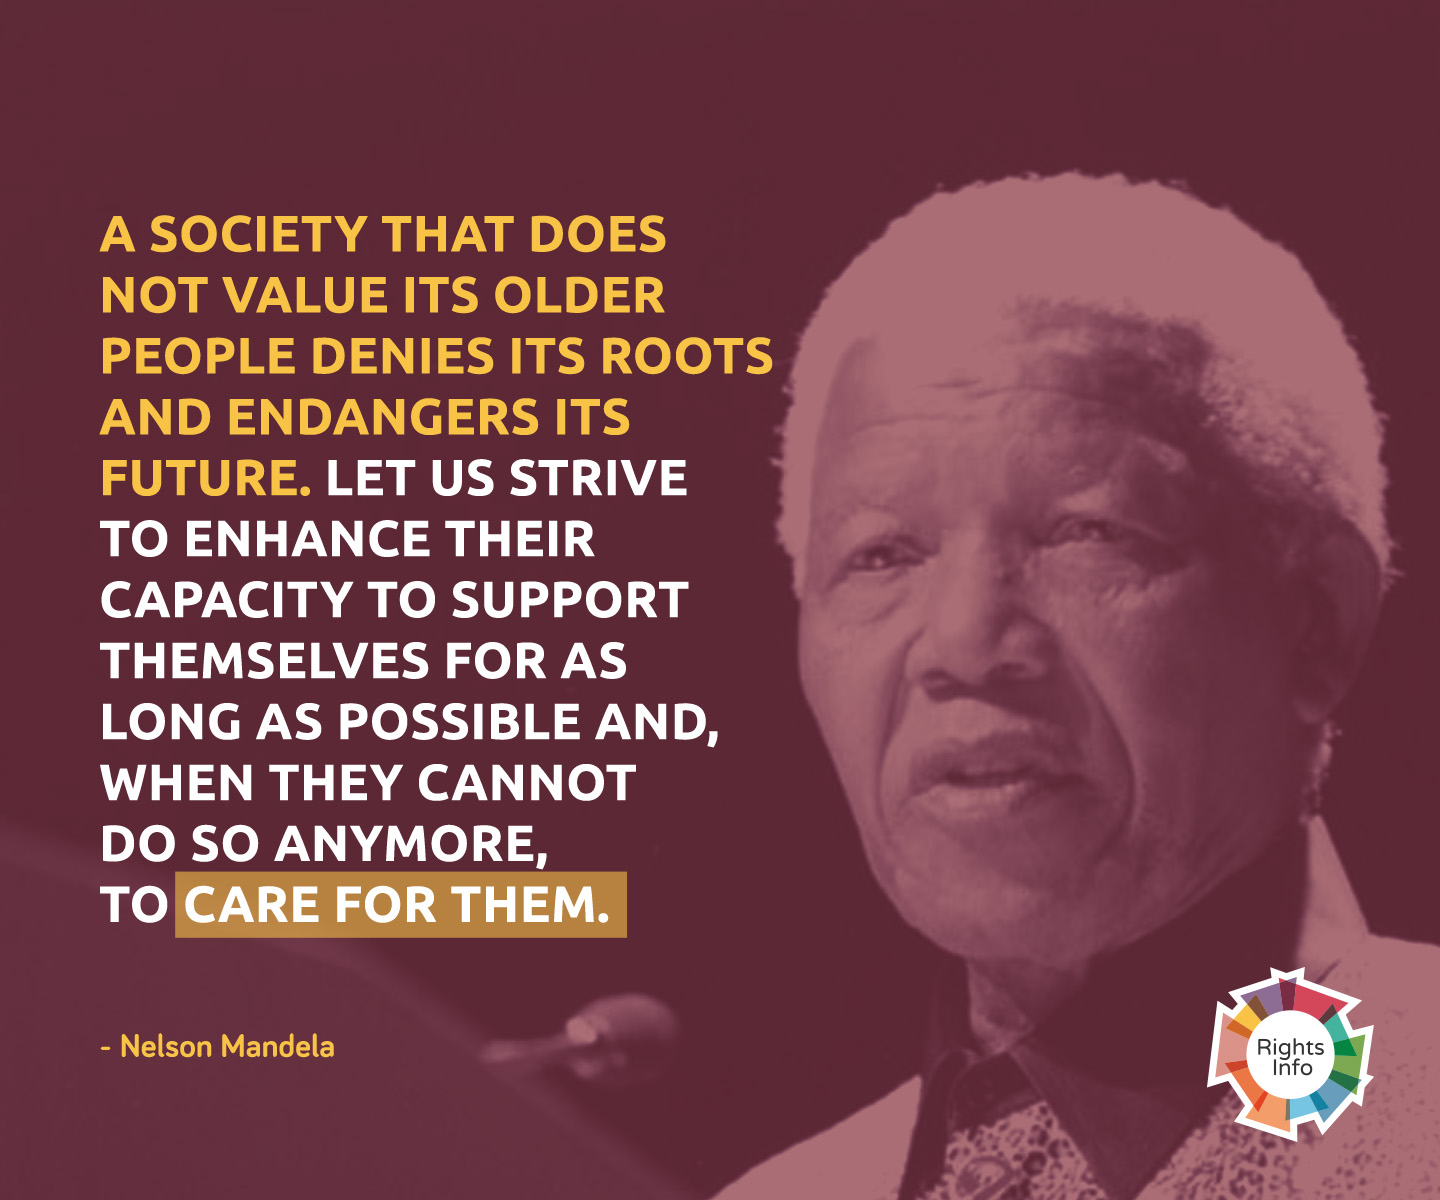 Nelson Mandela older people - RightsInfo